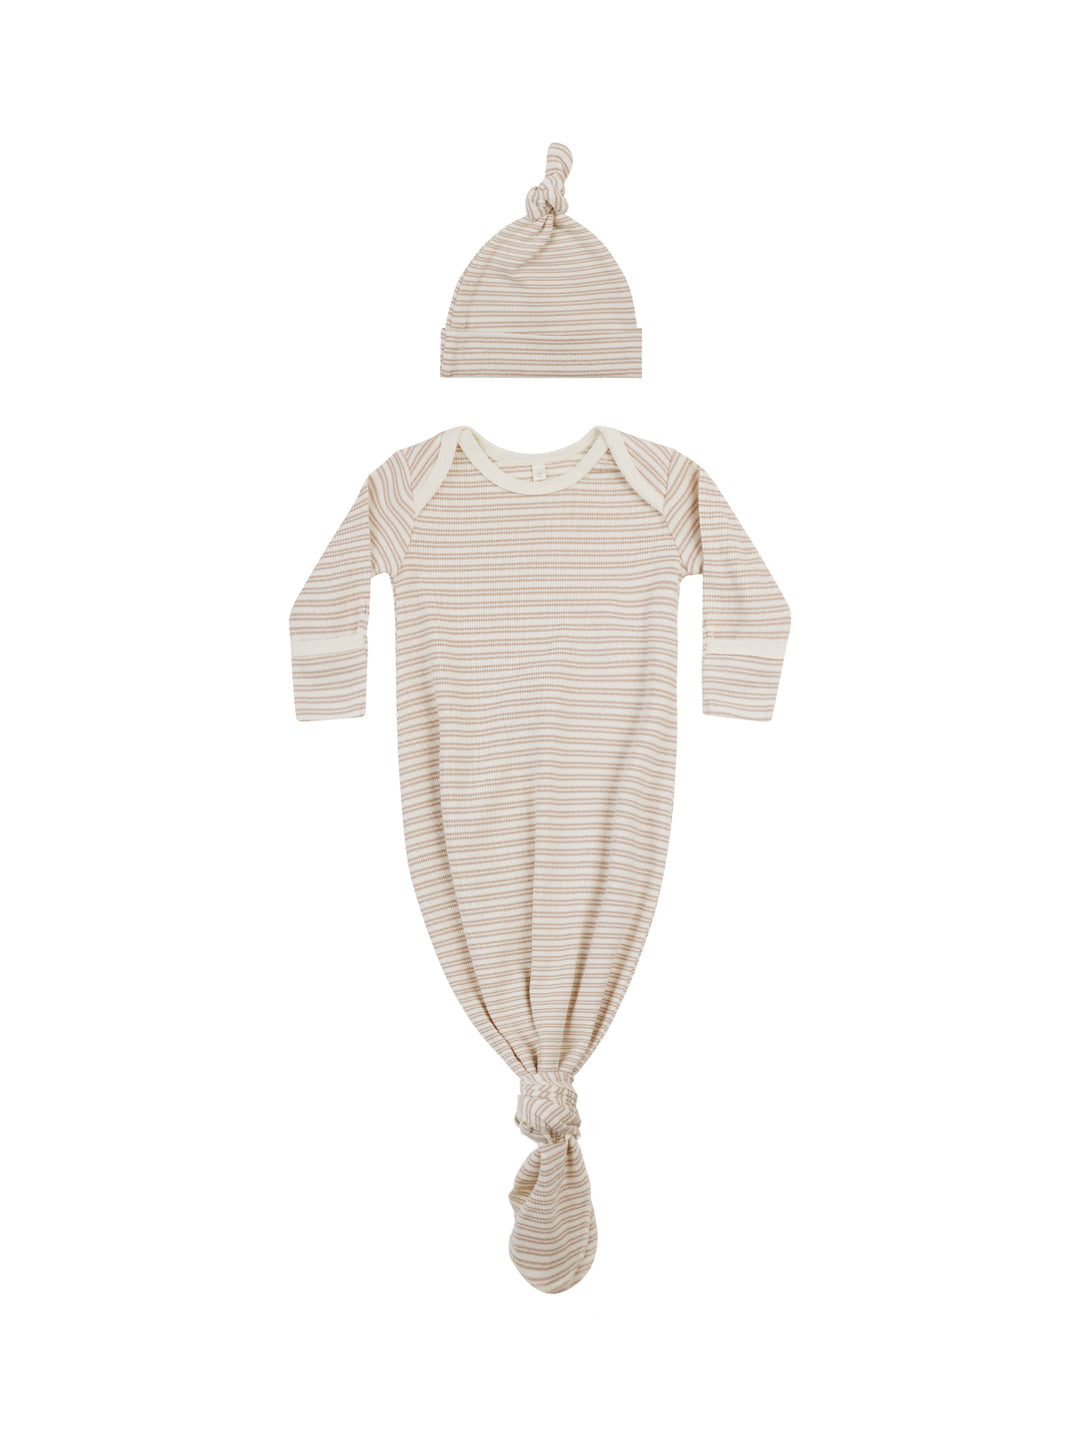 Organic Baby Gown + Hat | Oat Stripe